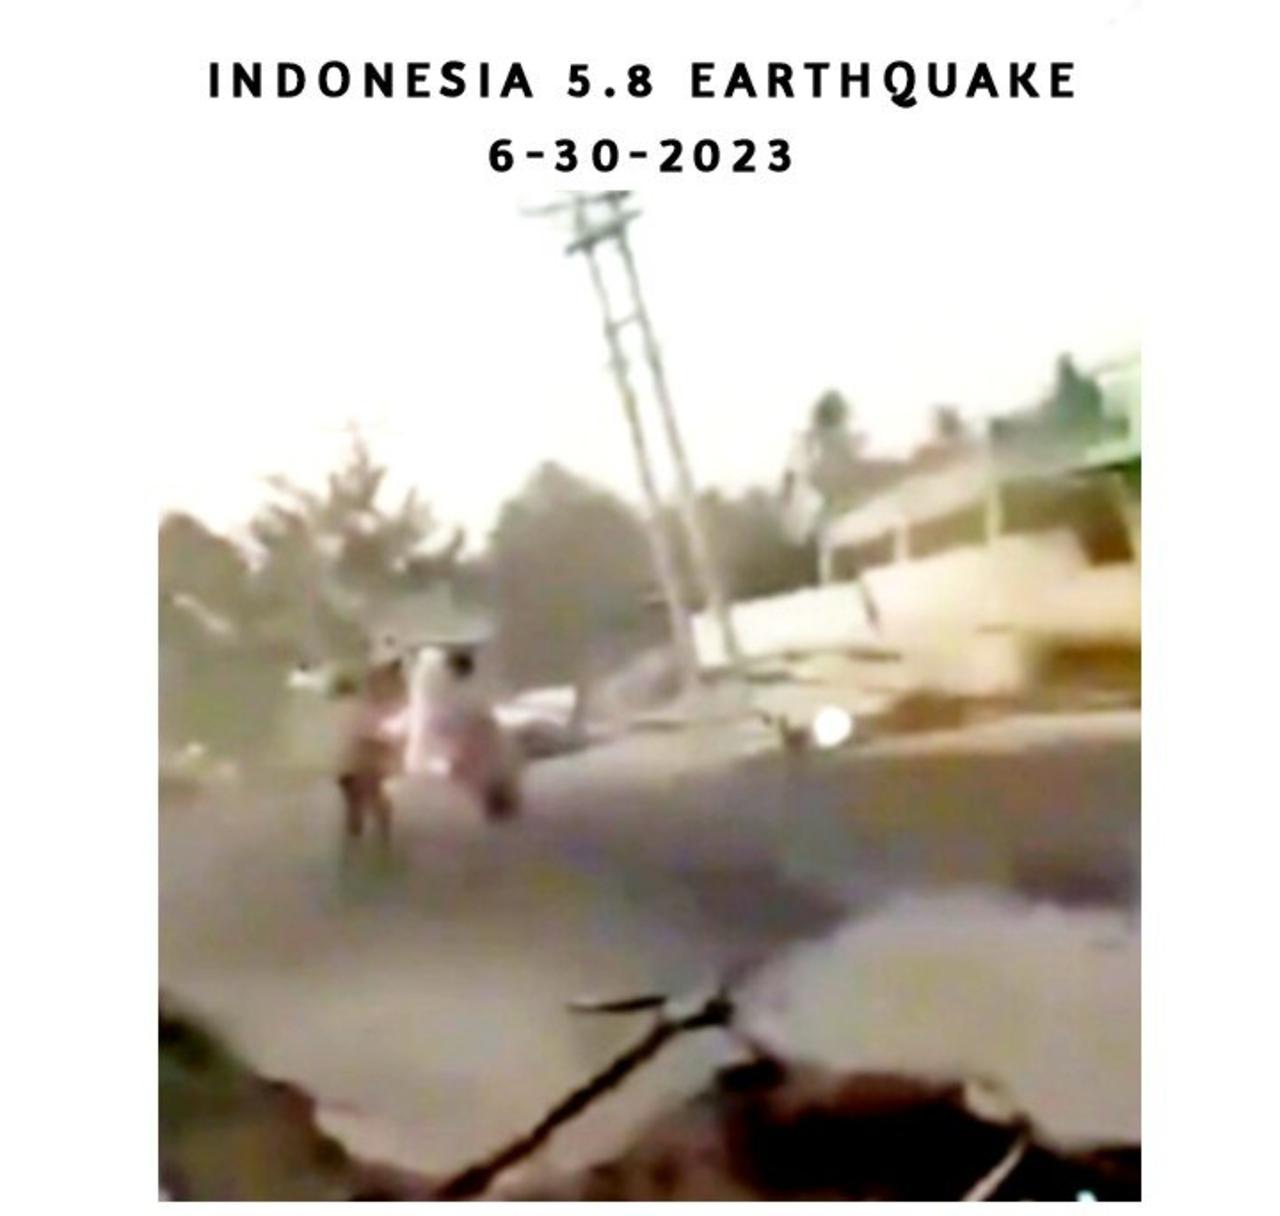 INDONESIA EARTHQUAKE 5.8 (6-30-2023)